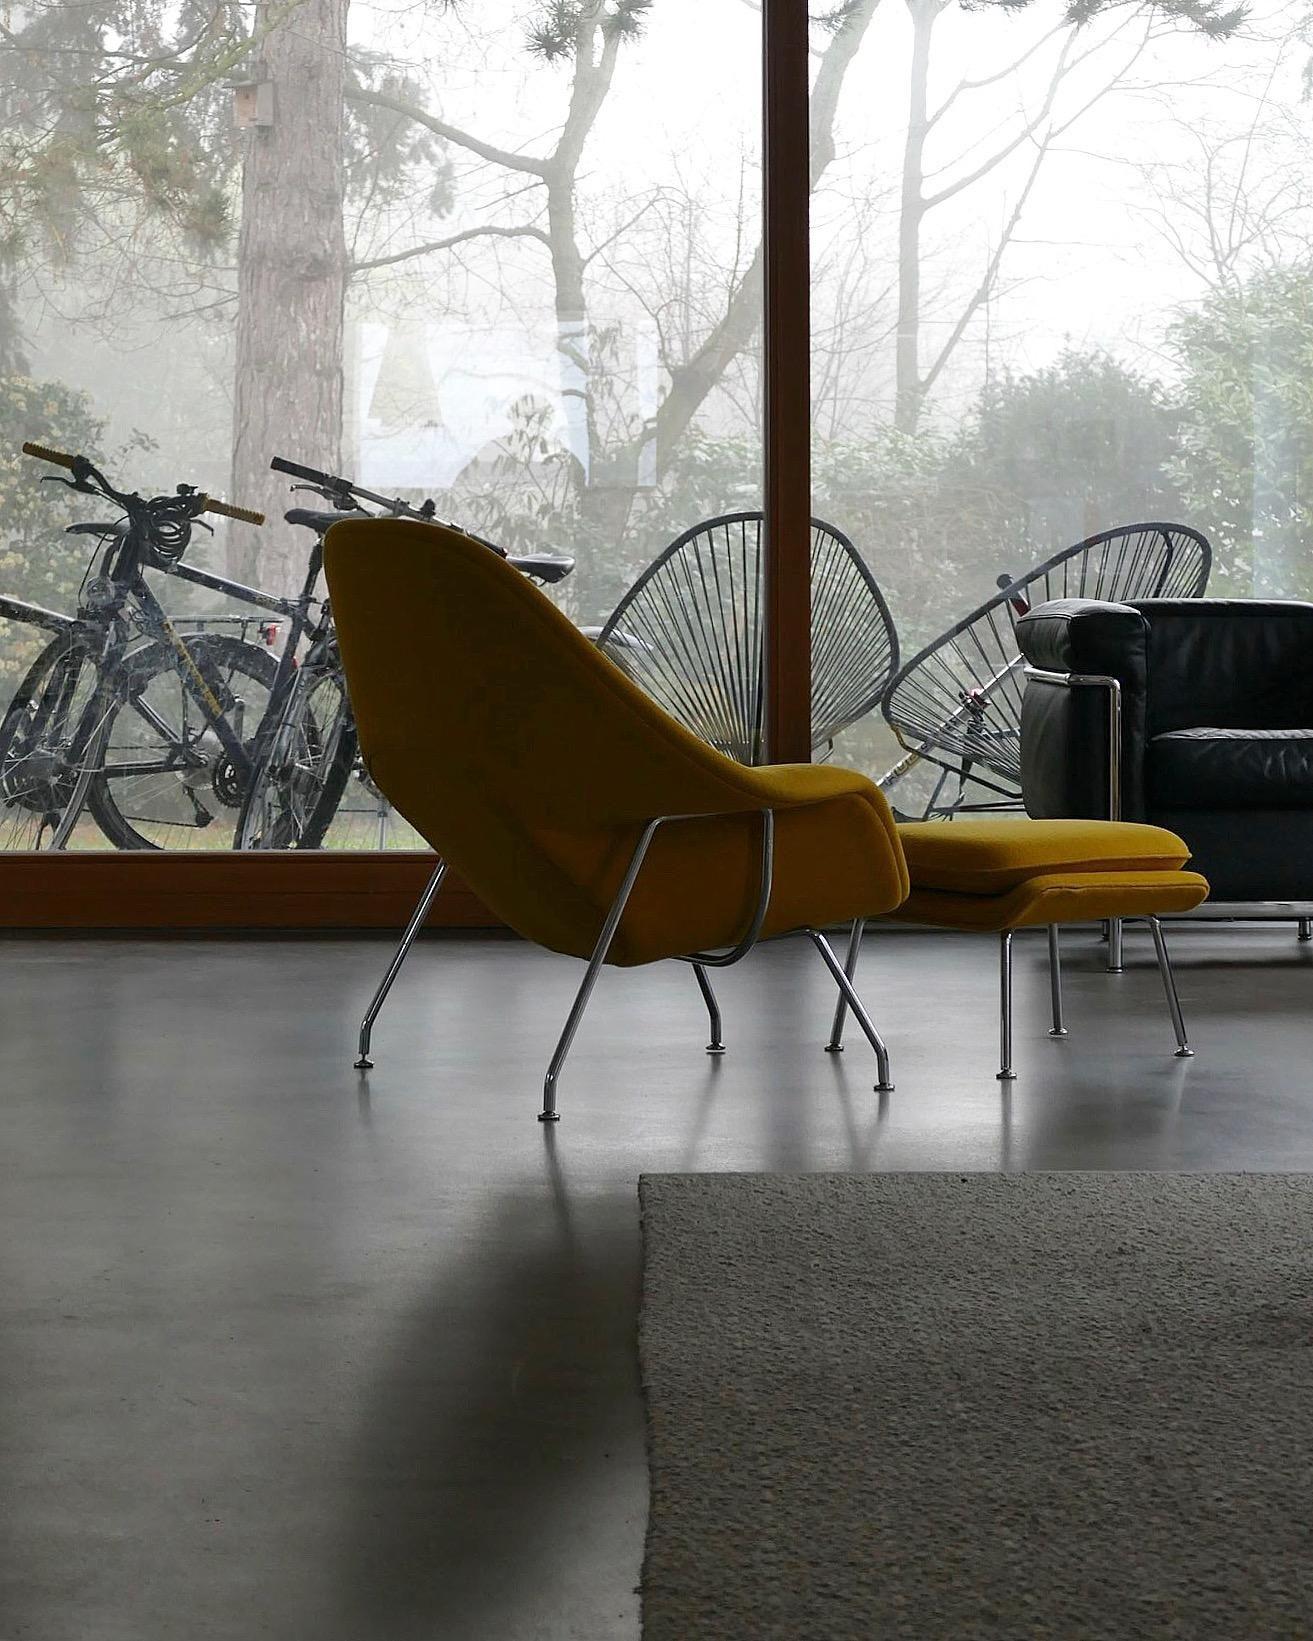 So eune Stimmung und keine Zeit die Fahrräder wegzuräumen. Egal oder? #cozy#scandinavian#designklassiker#farbe